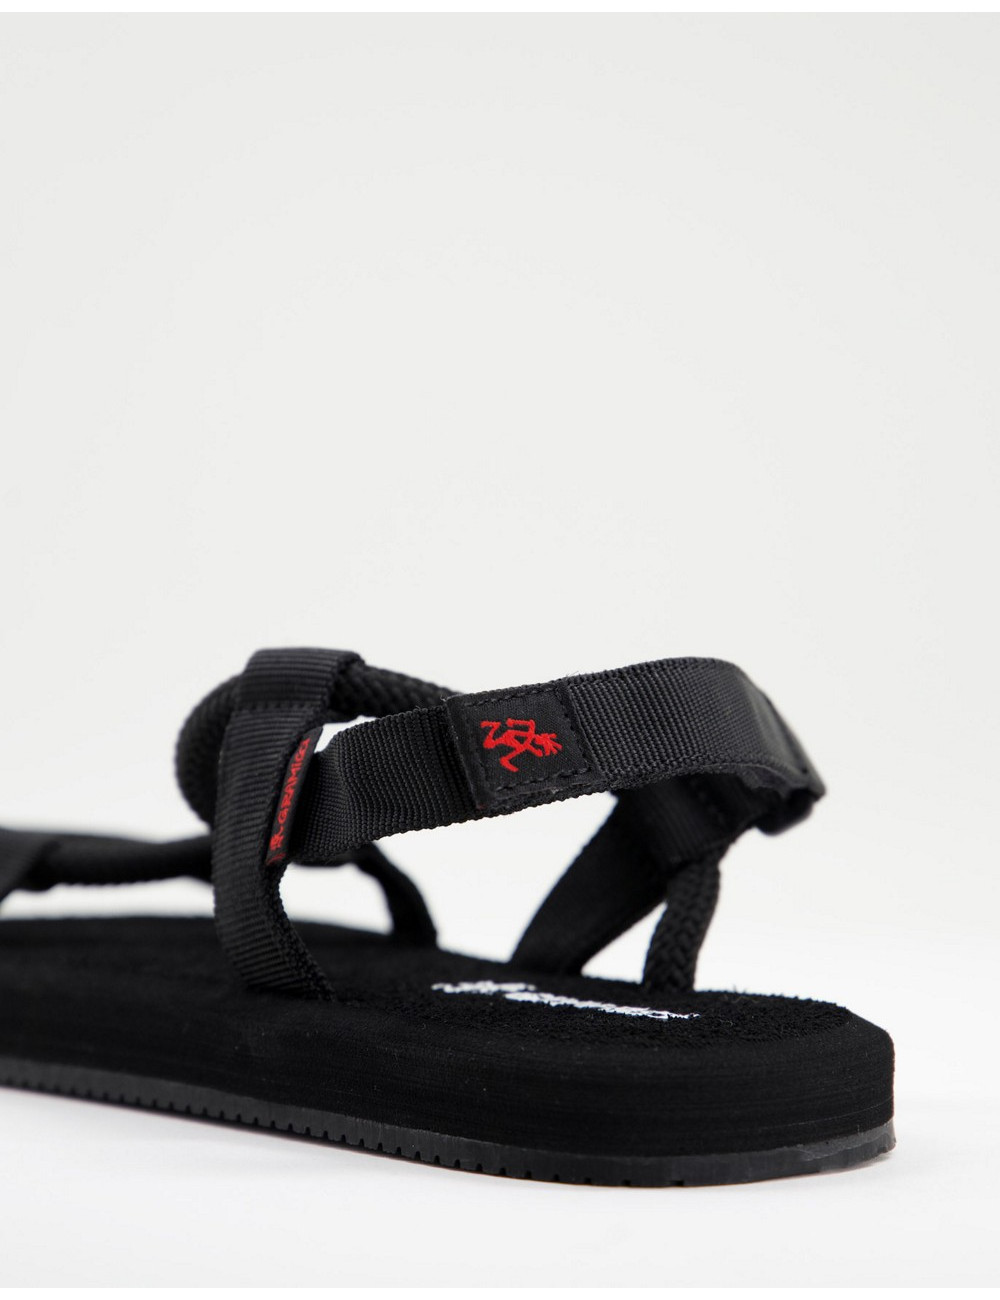 Gramicci rope sandals in black